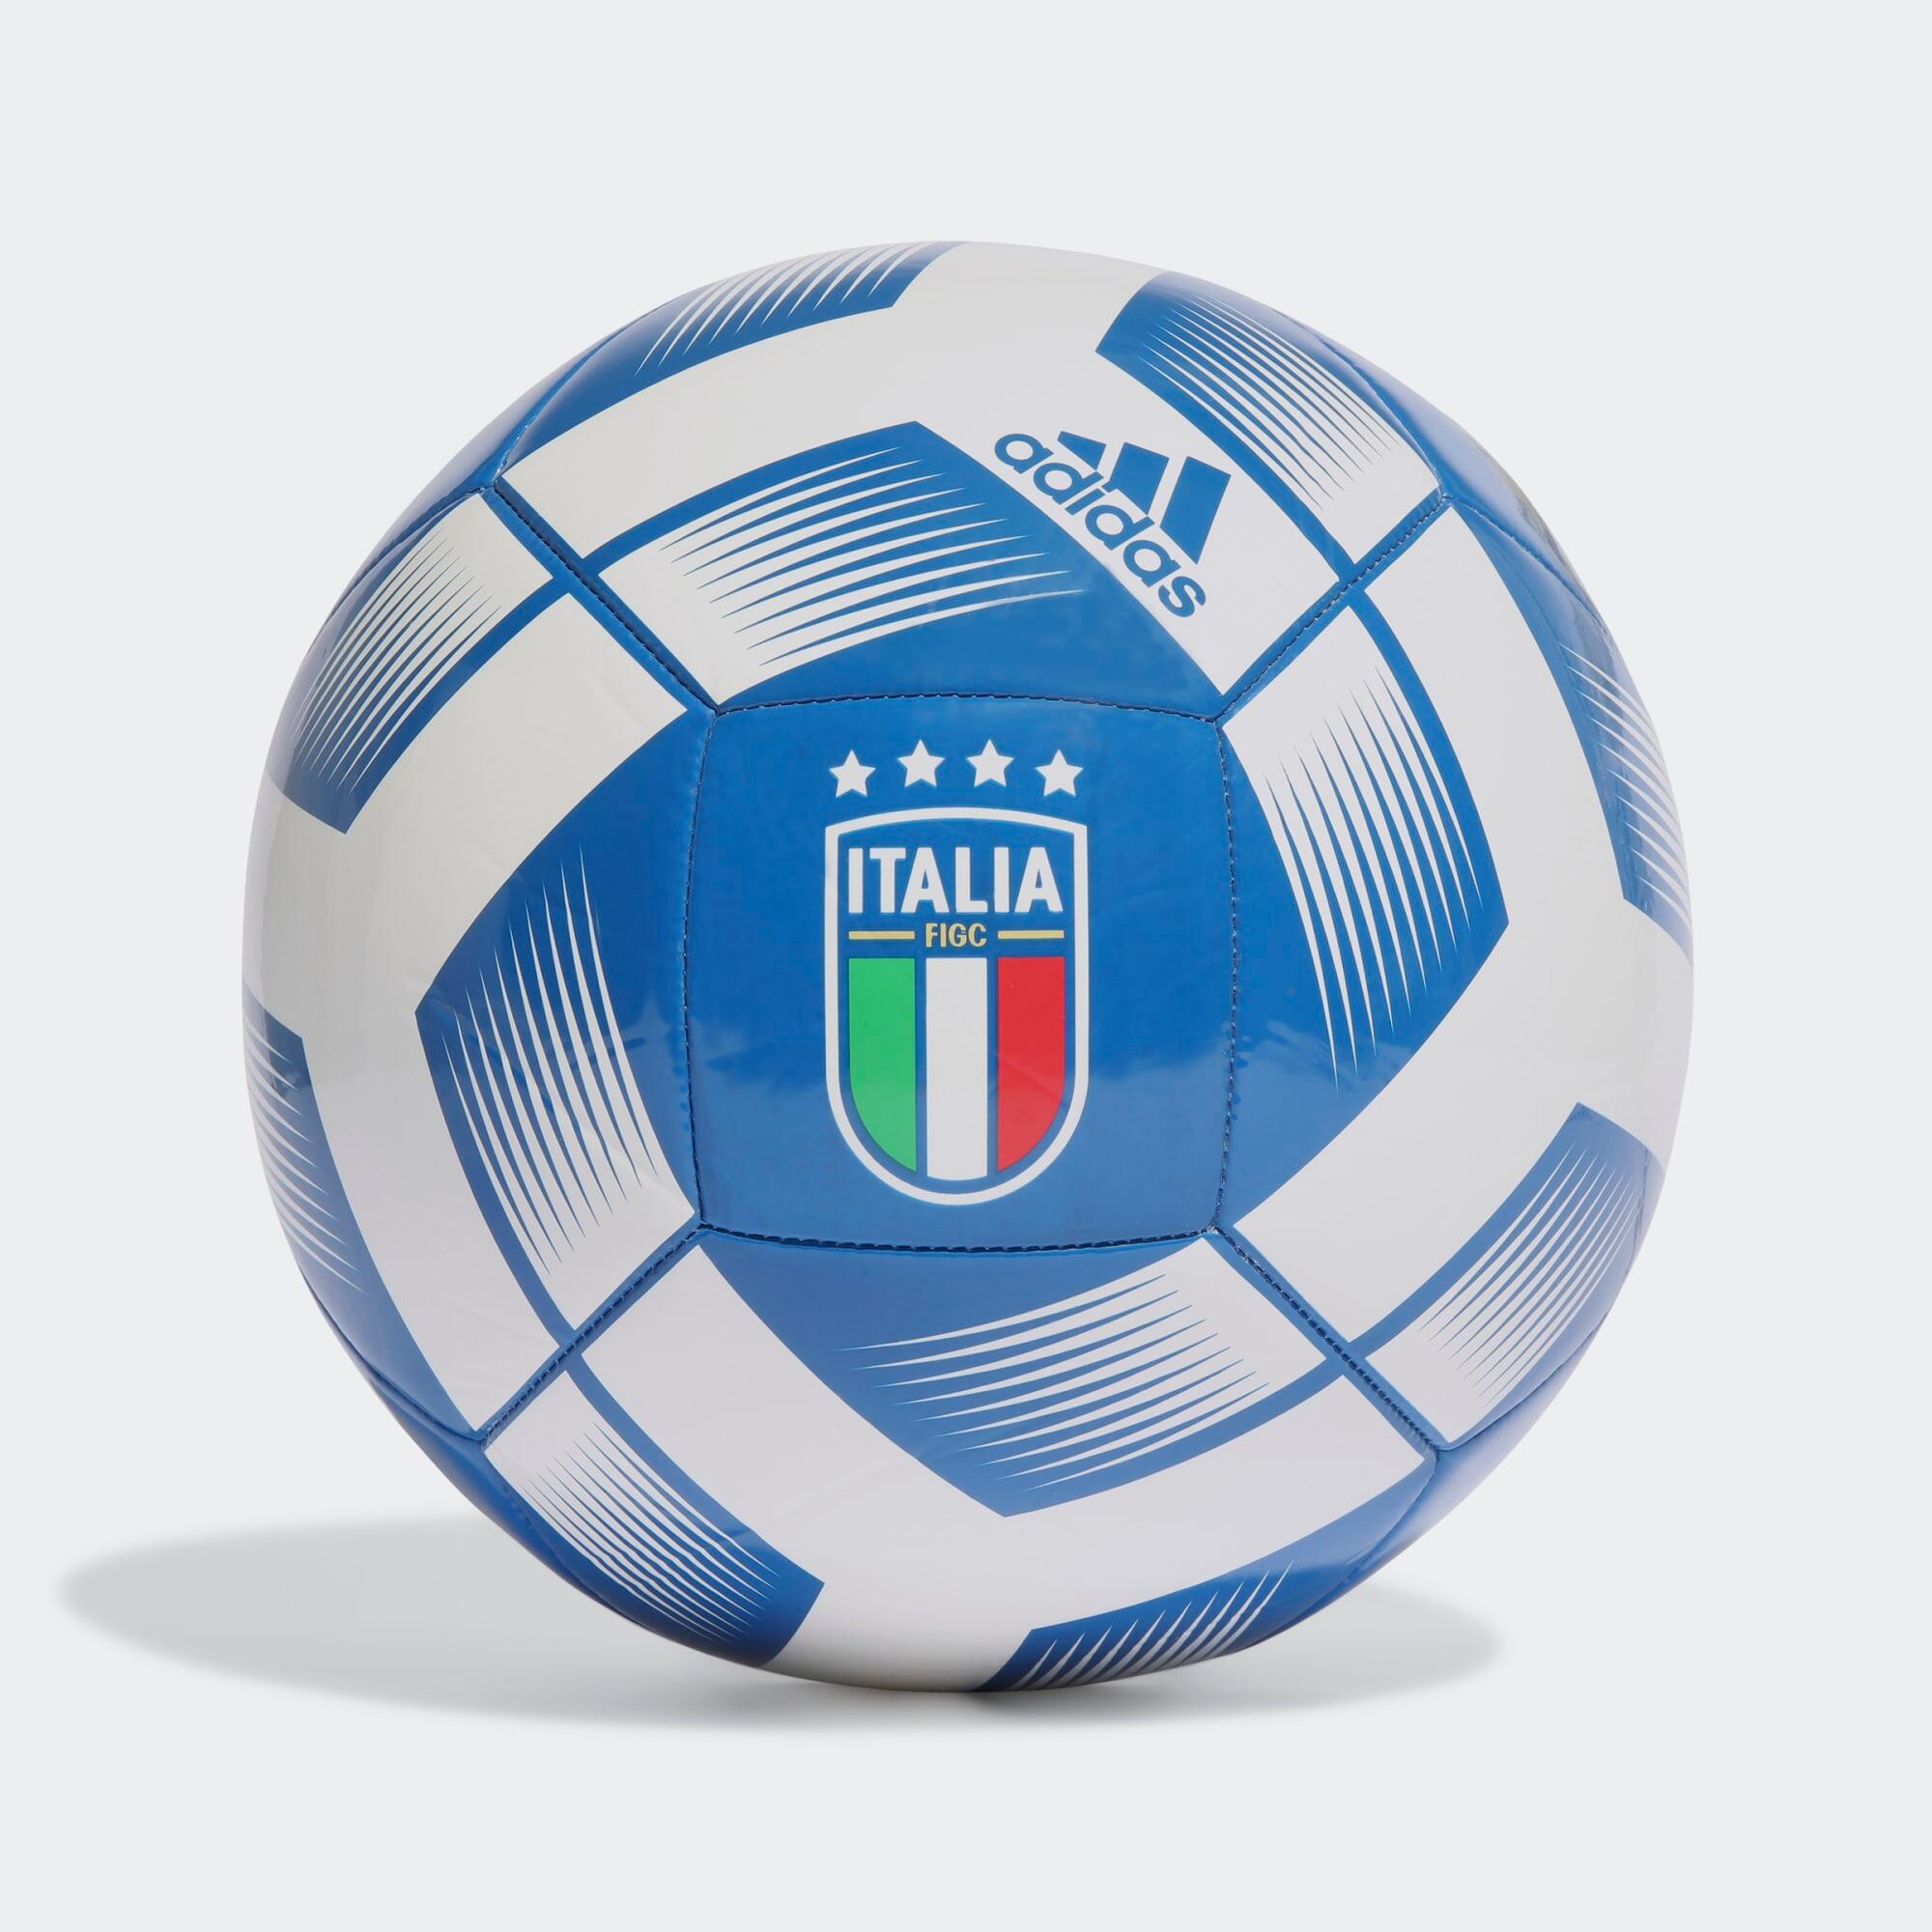 ADIDAS Ball - Italy Size 5